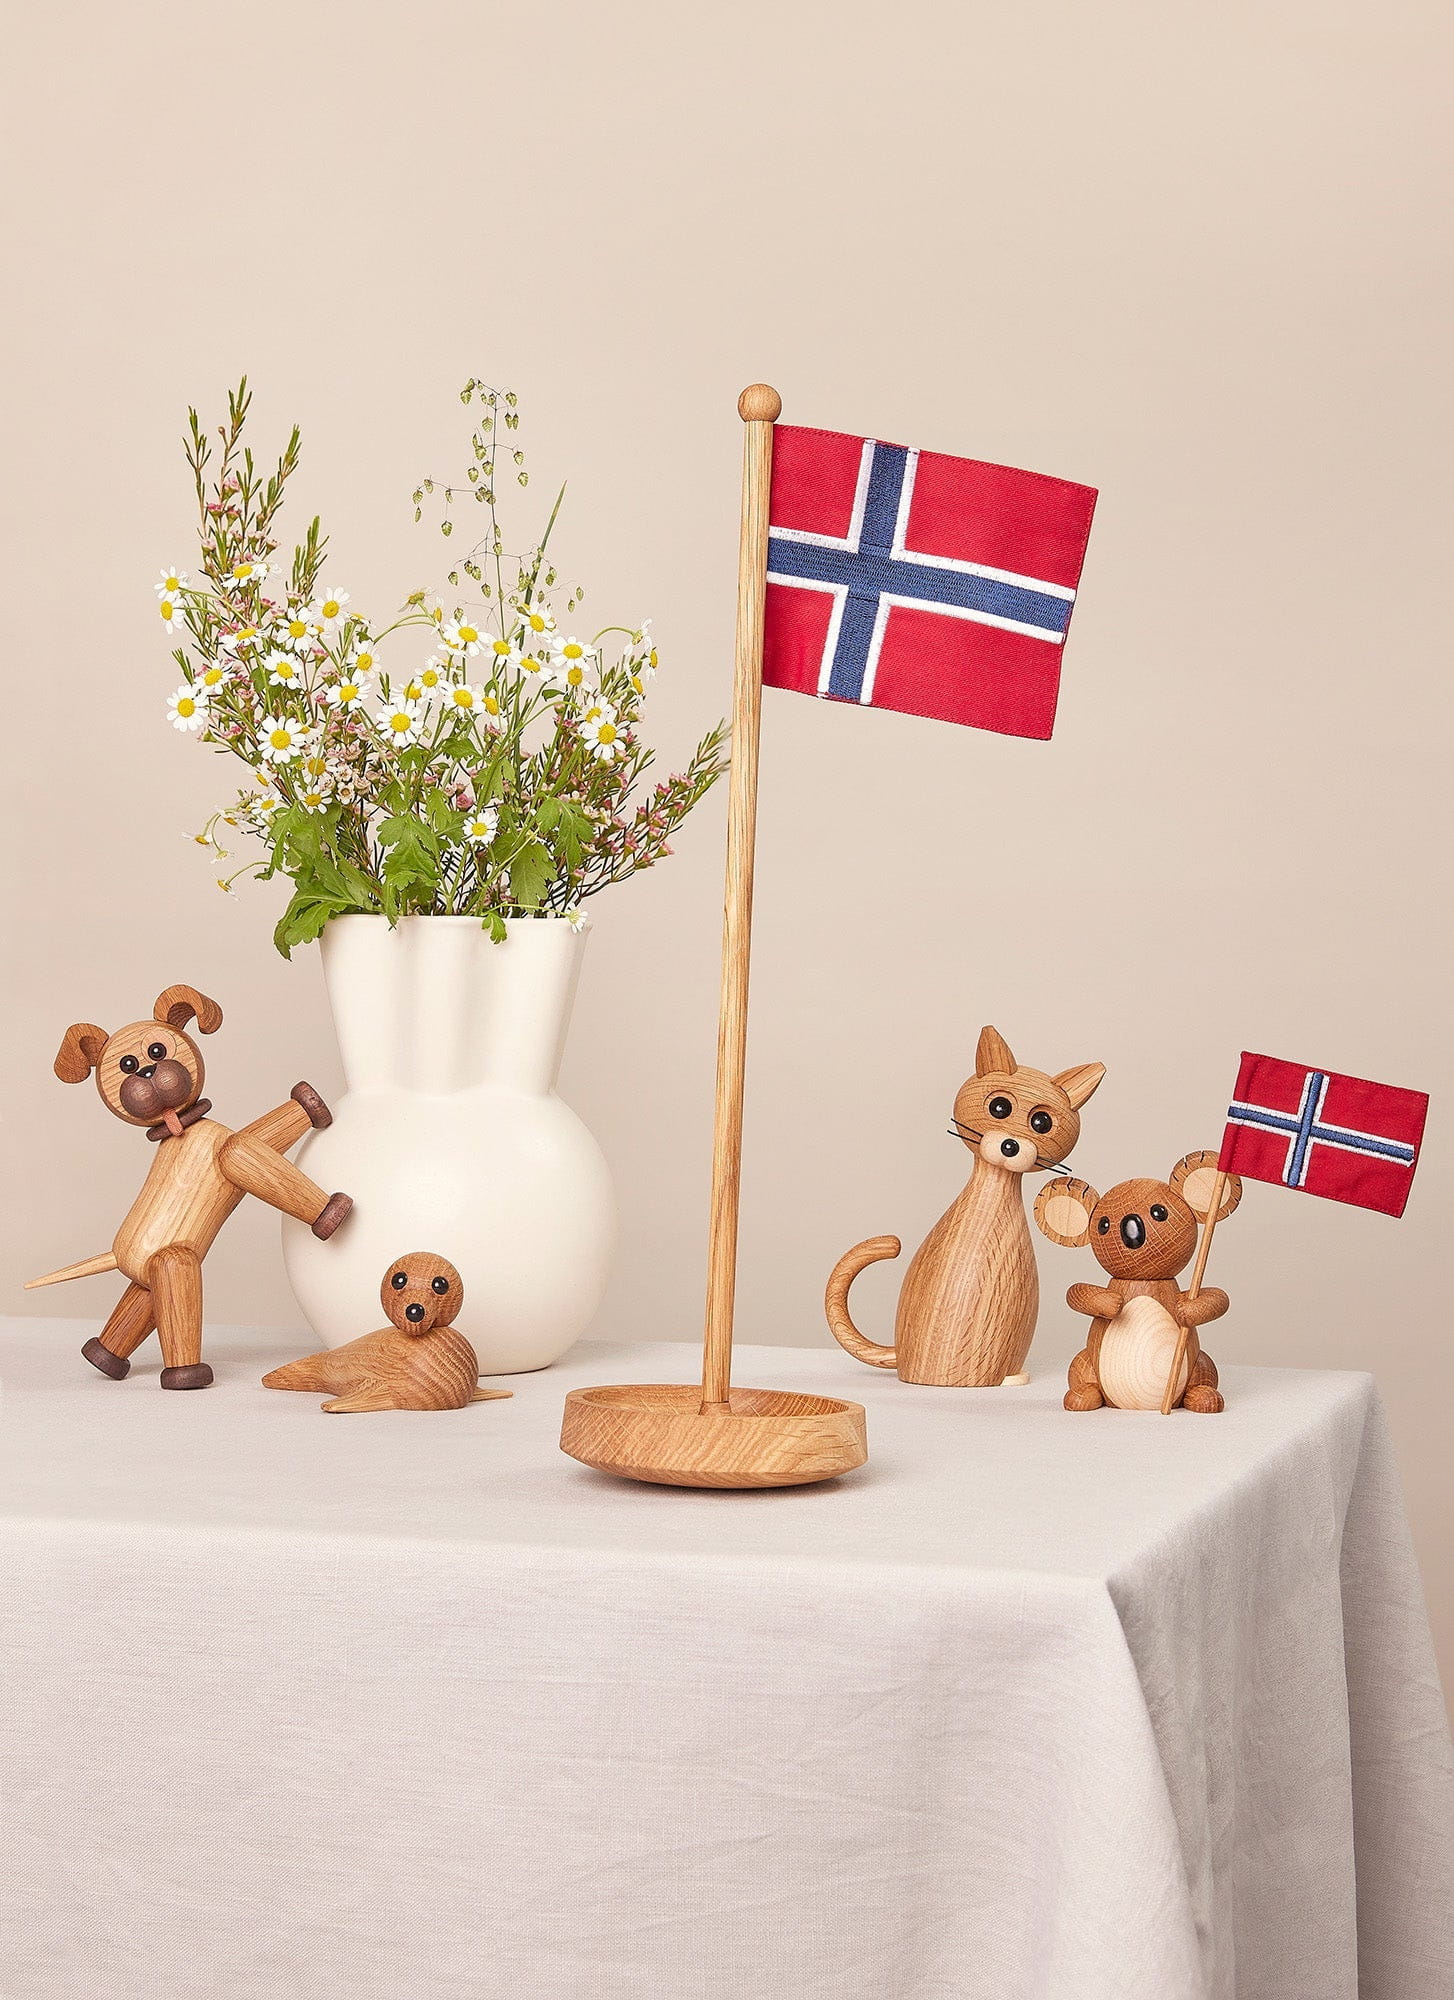 Drapeau de la table de la copenhague du printemps, drapeau norvégien